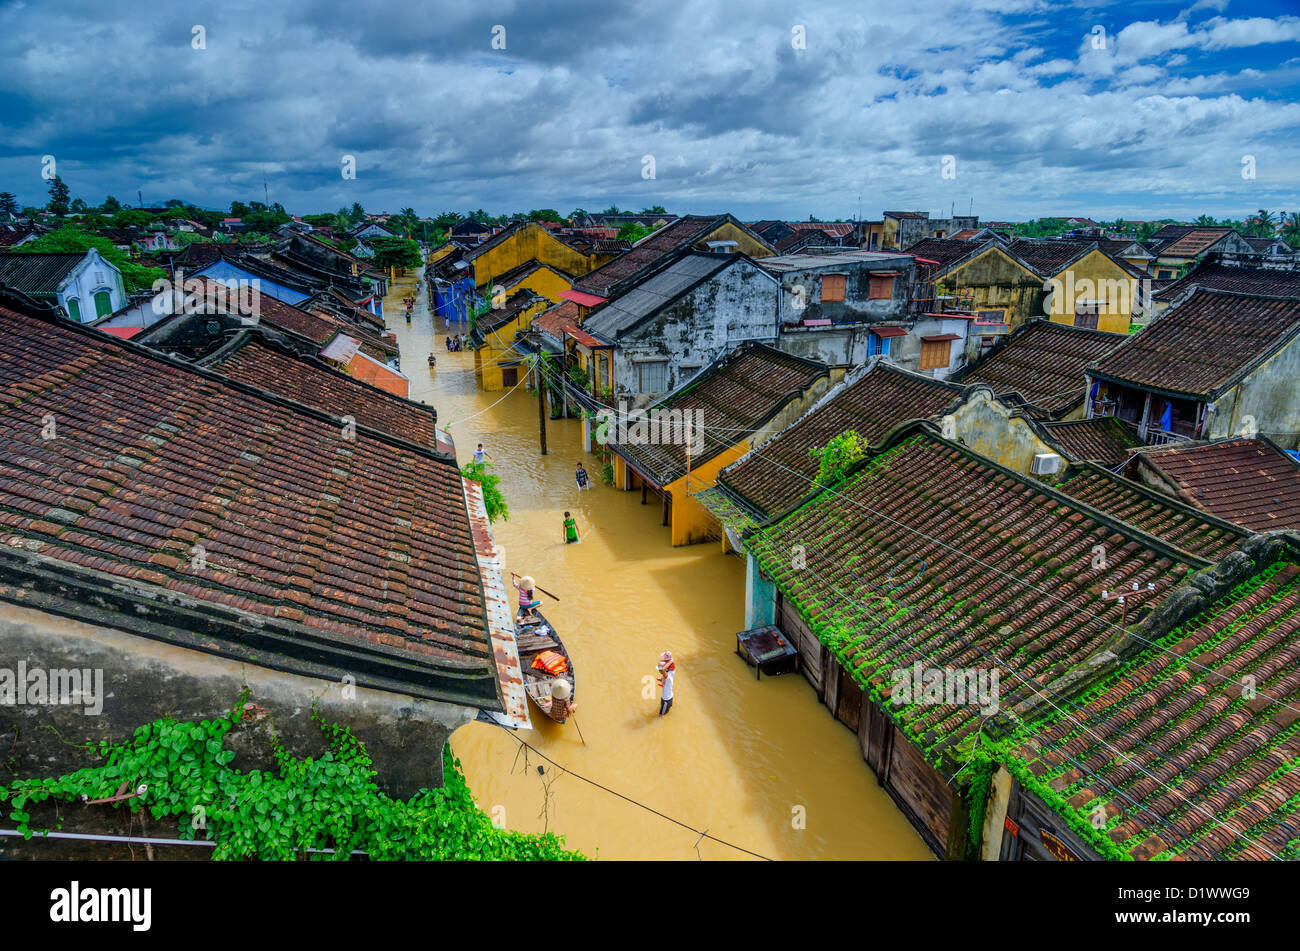 Hoi An, azoteas y calles inundadas, Vietnam Foto de stock